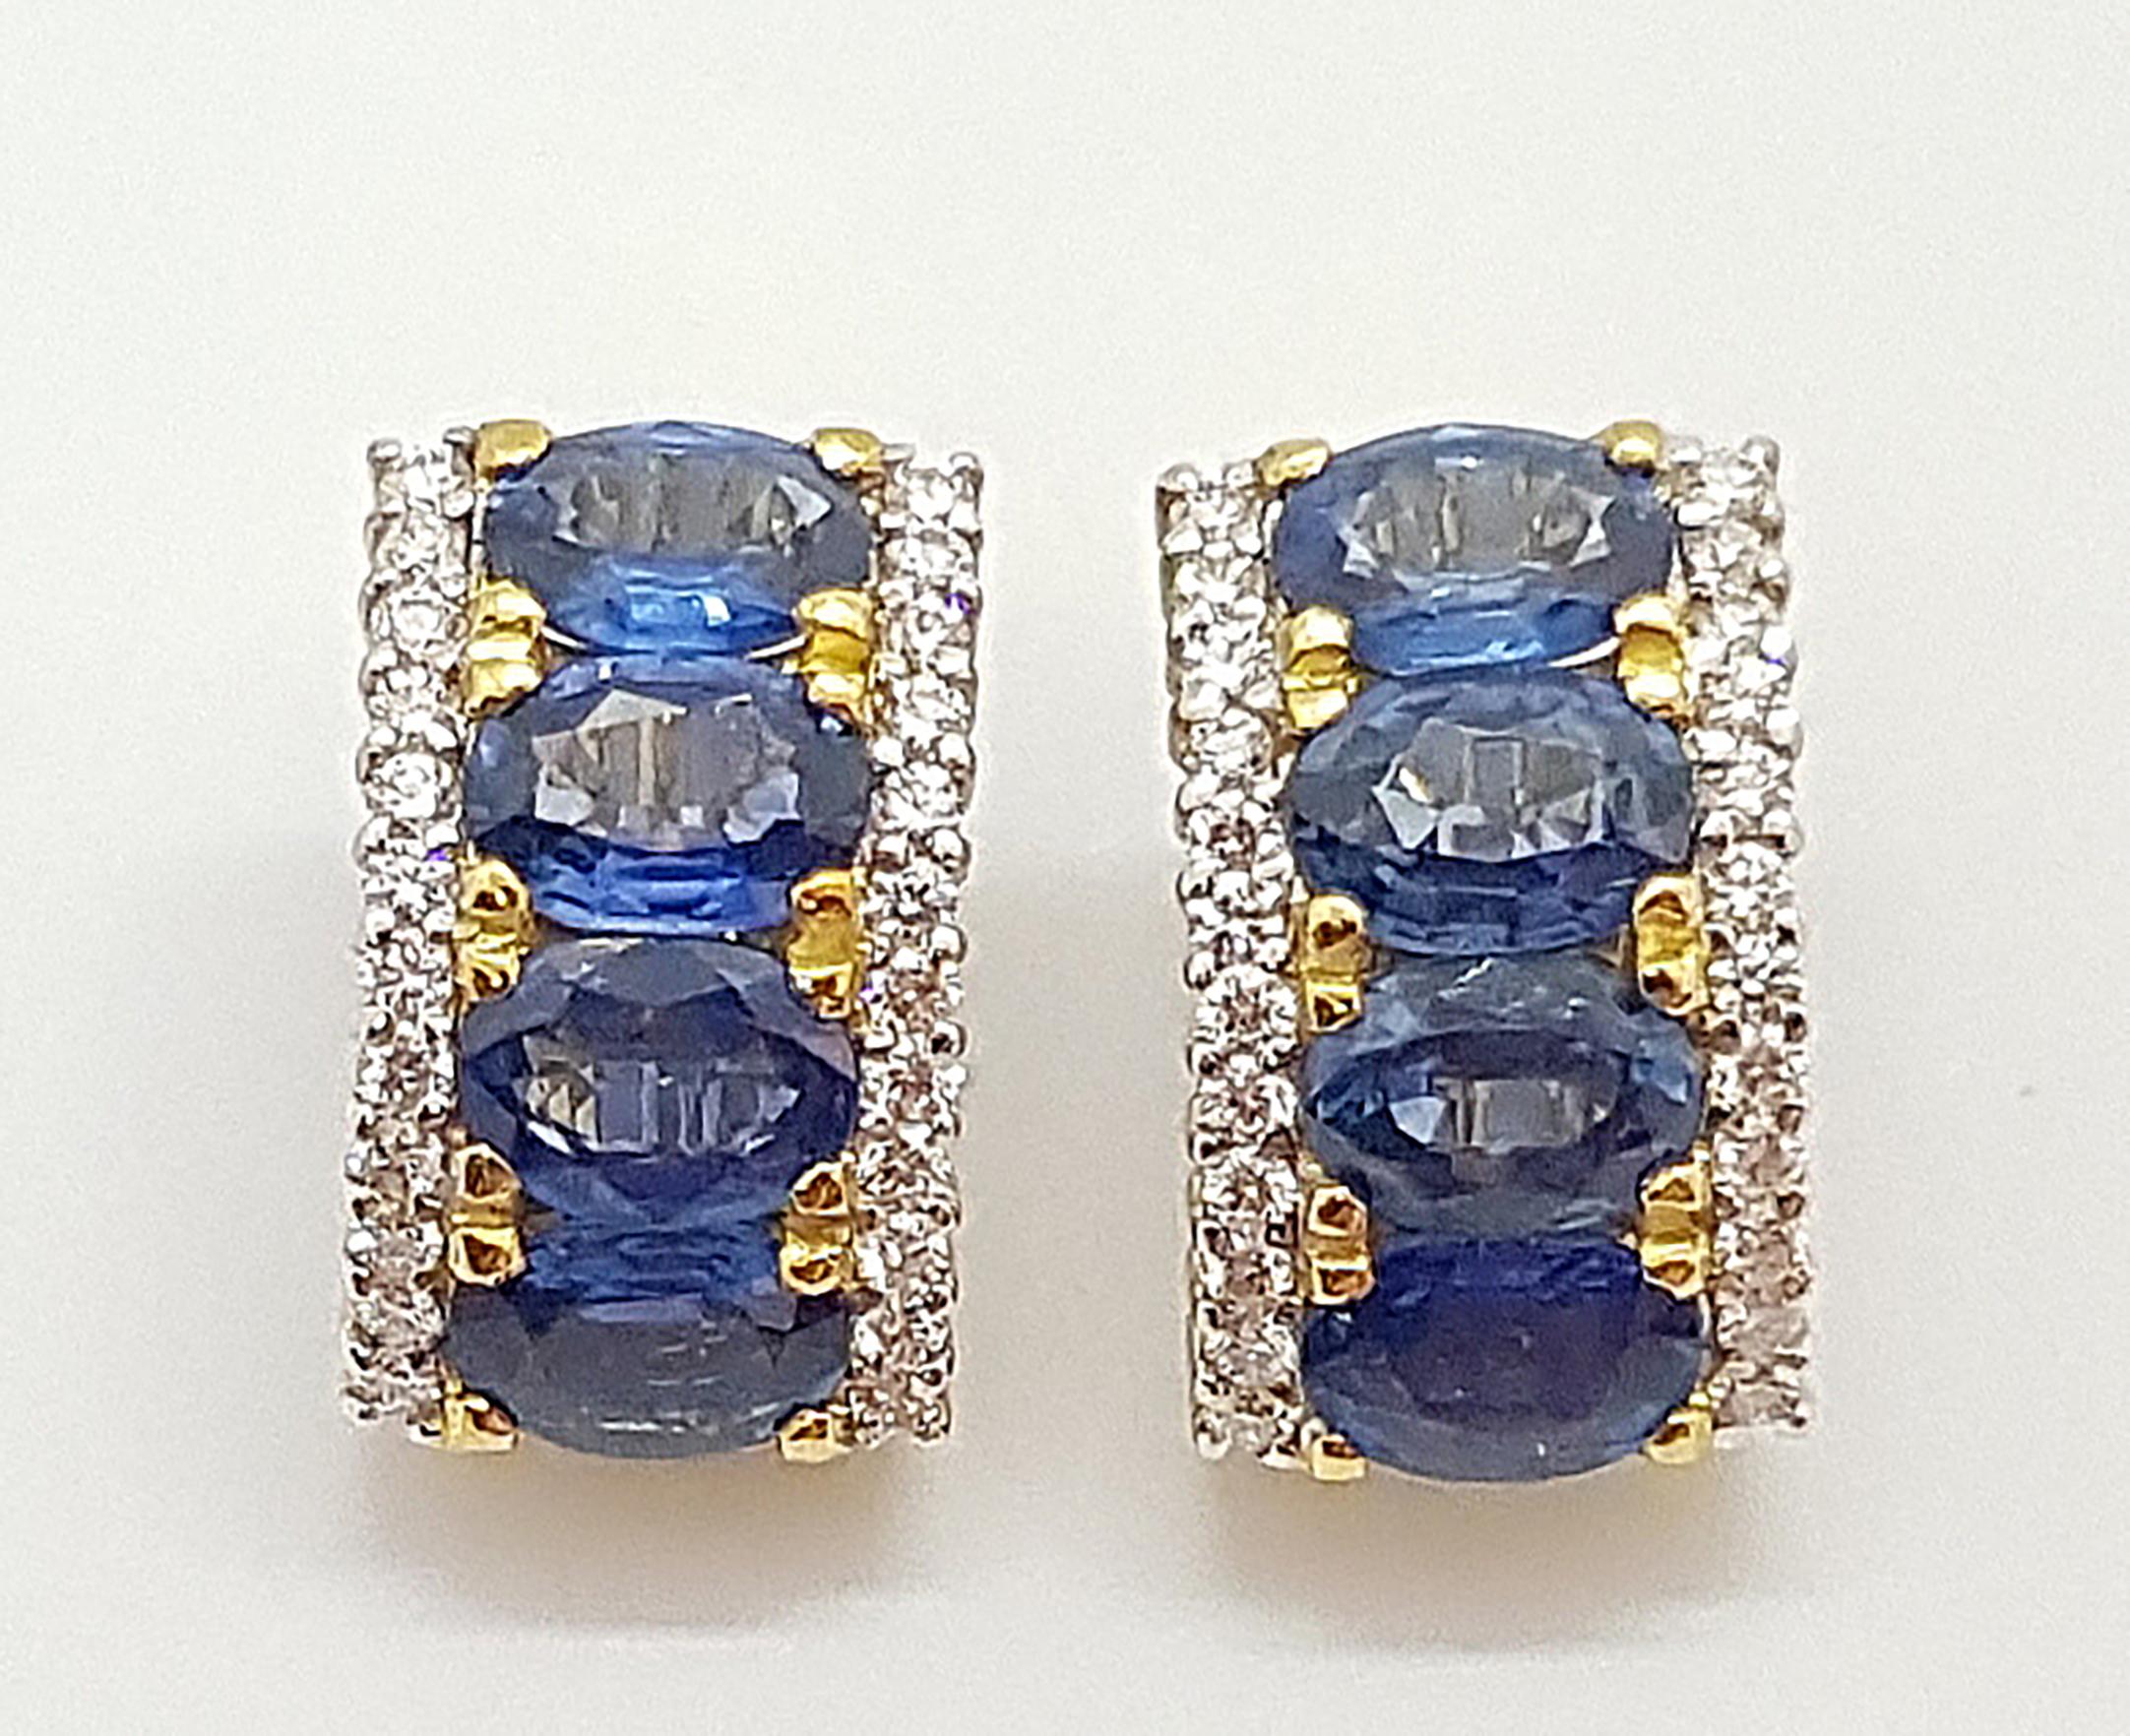 Blauer Saphir 7,26 Karat mit Diamant 0,78 Karat Ohrringe in 18 Karat Goldfassung

Breite:  1.0 cm 
Länge: 2,0 cm
Gesamtgewicht: 10,68 Gramm

